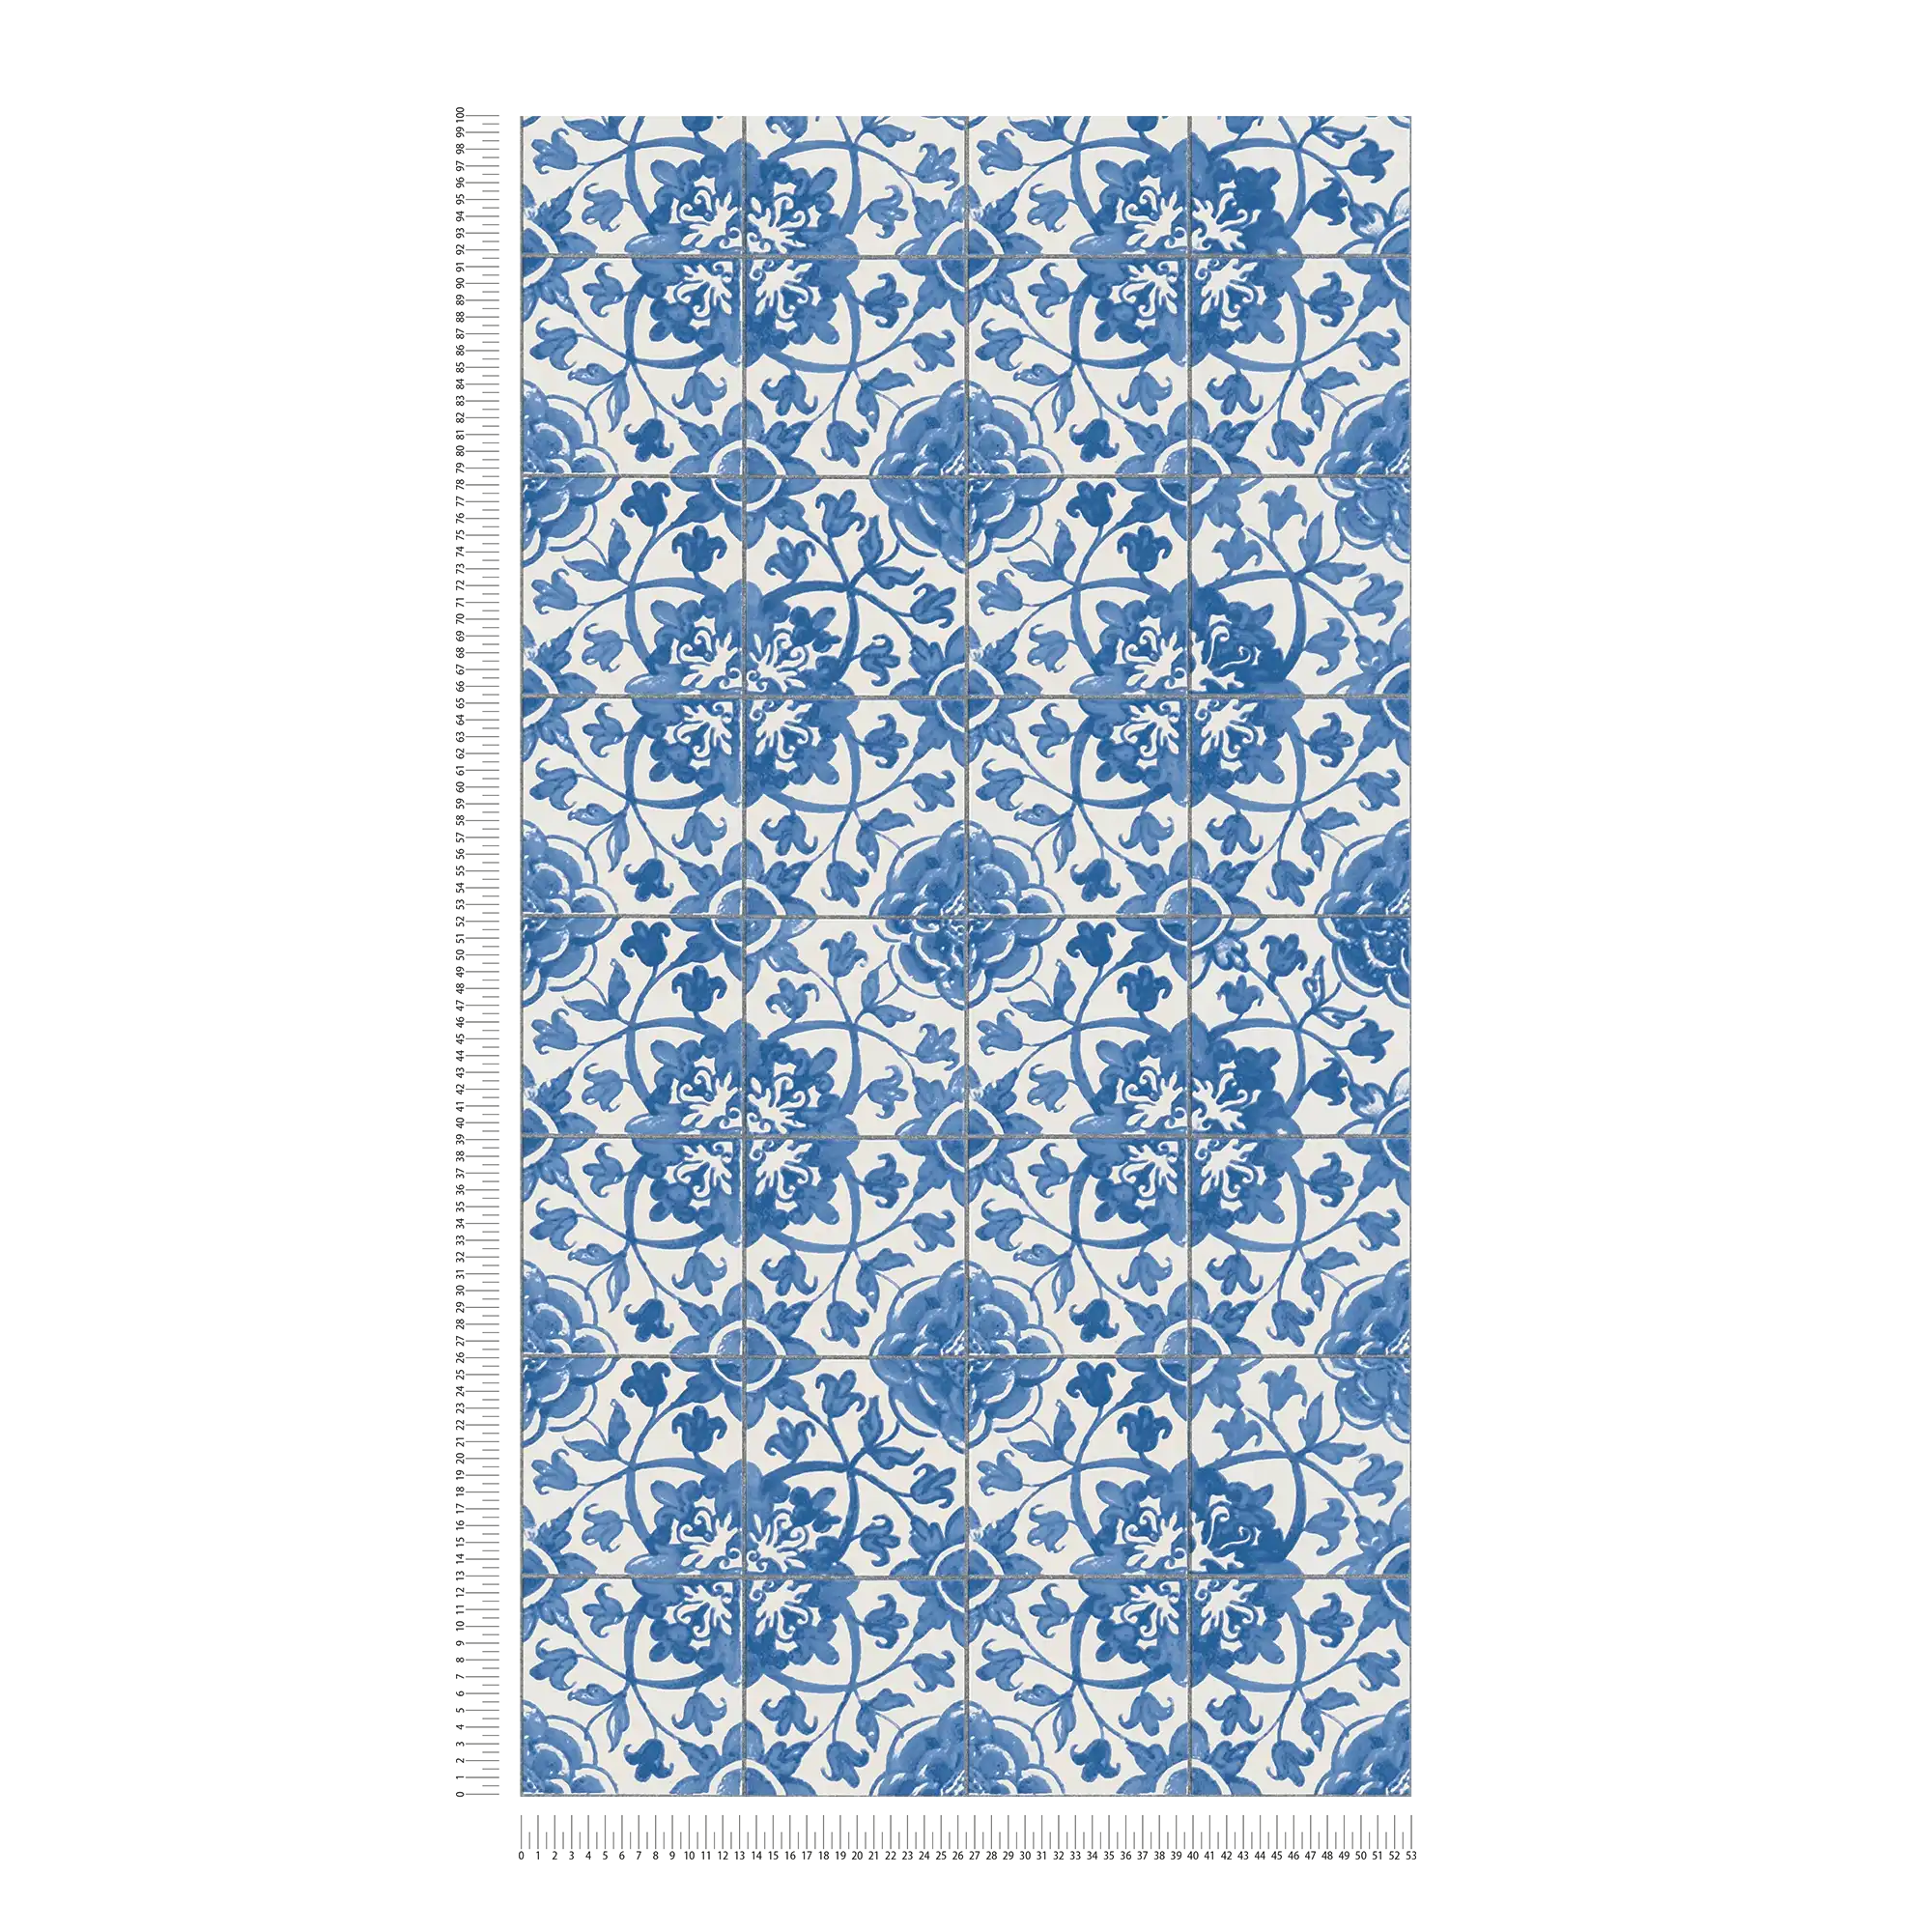             Papier peint auto-adhésif | aspect carrelage style vintage - bleu, blanc
        